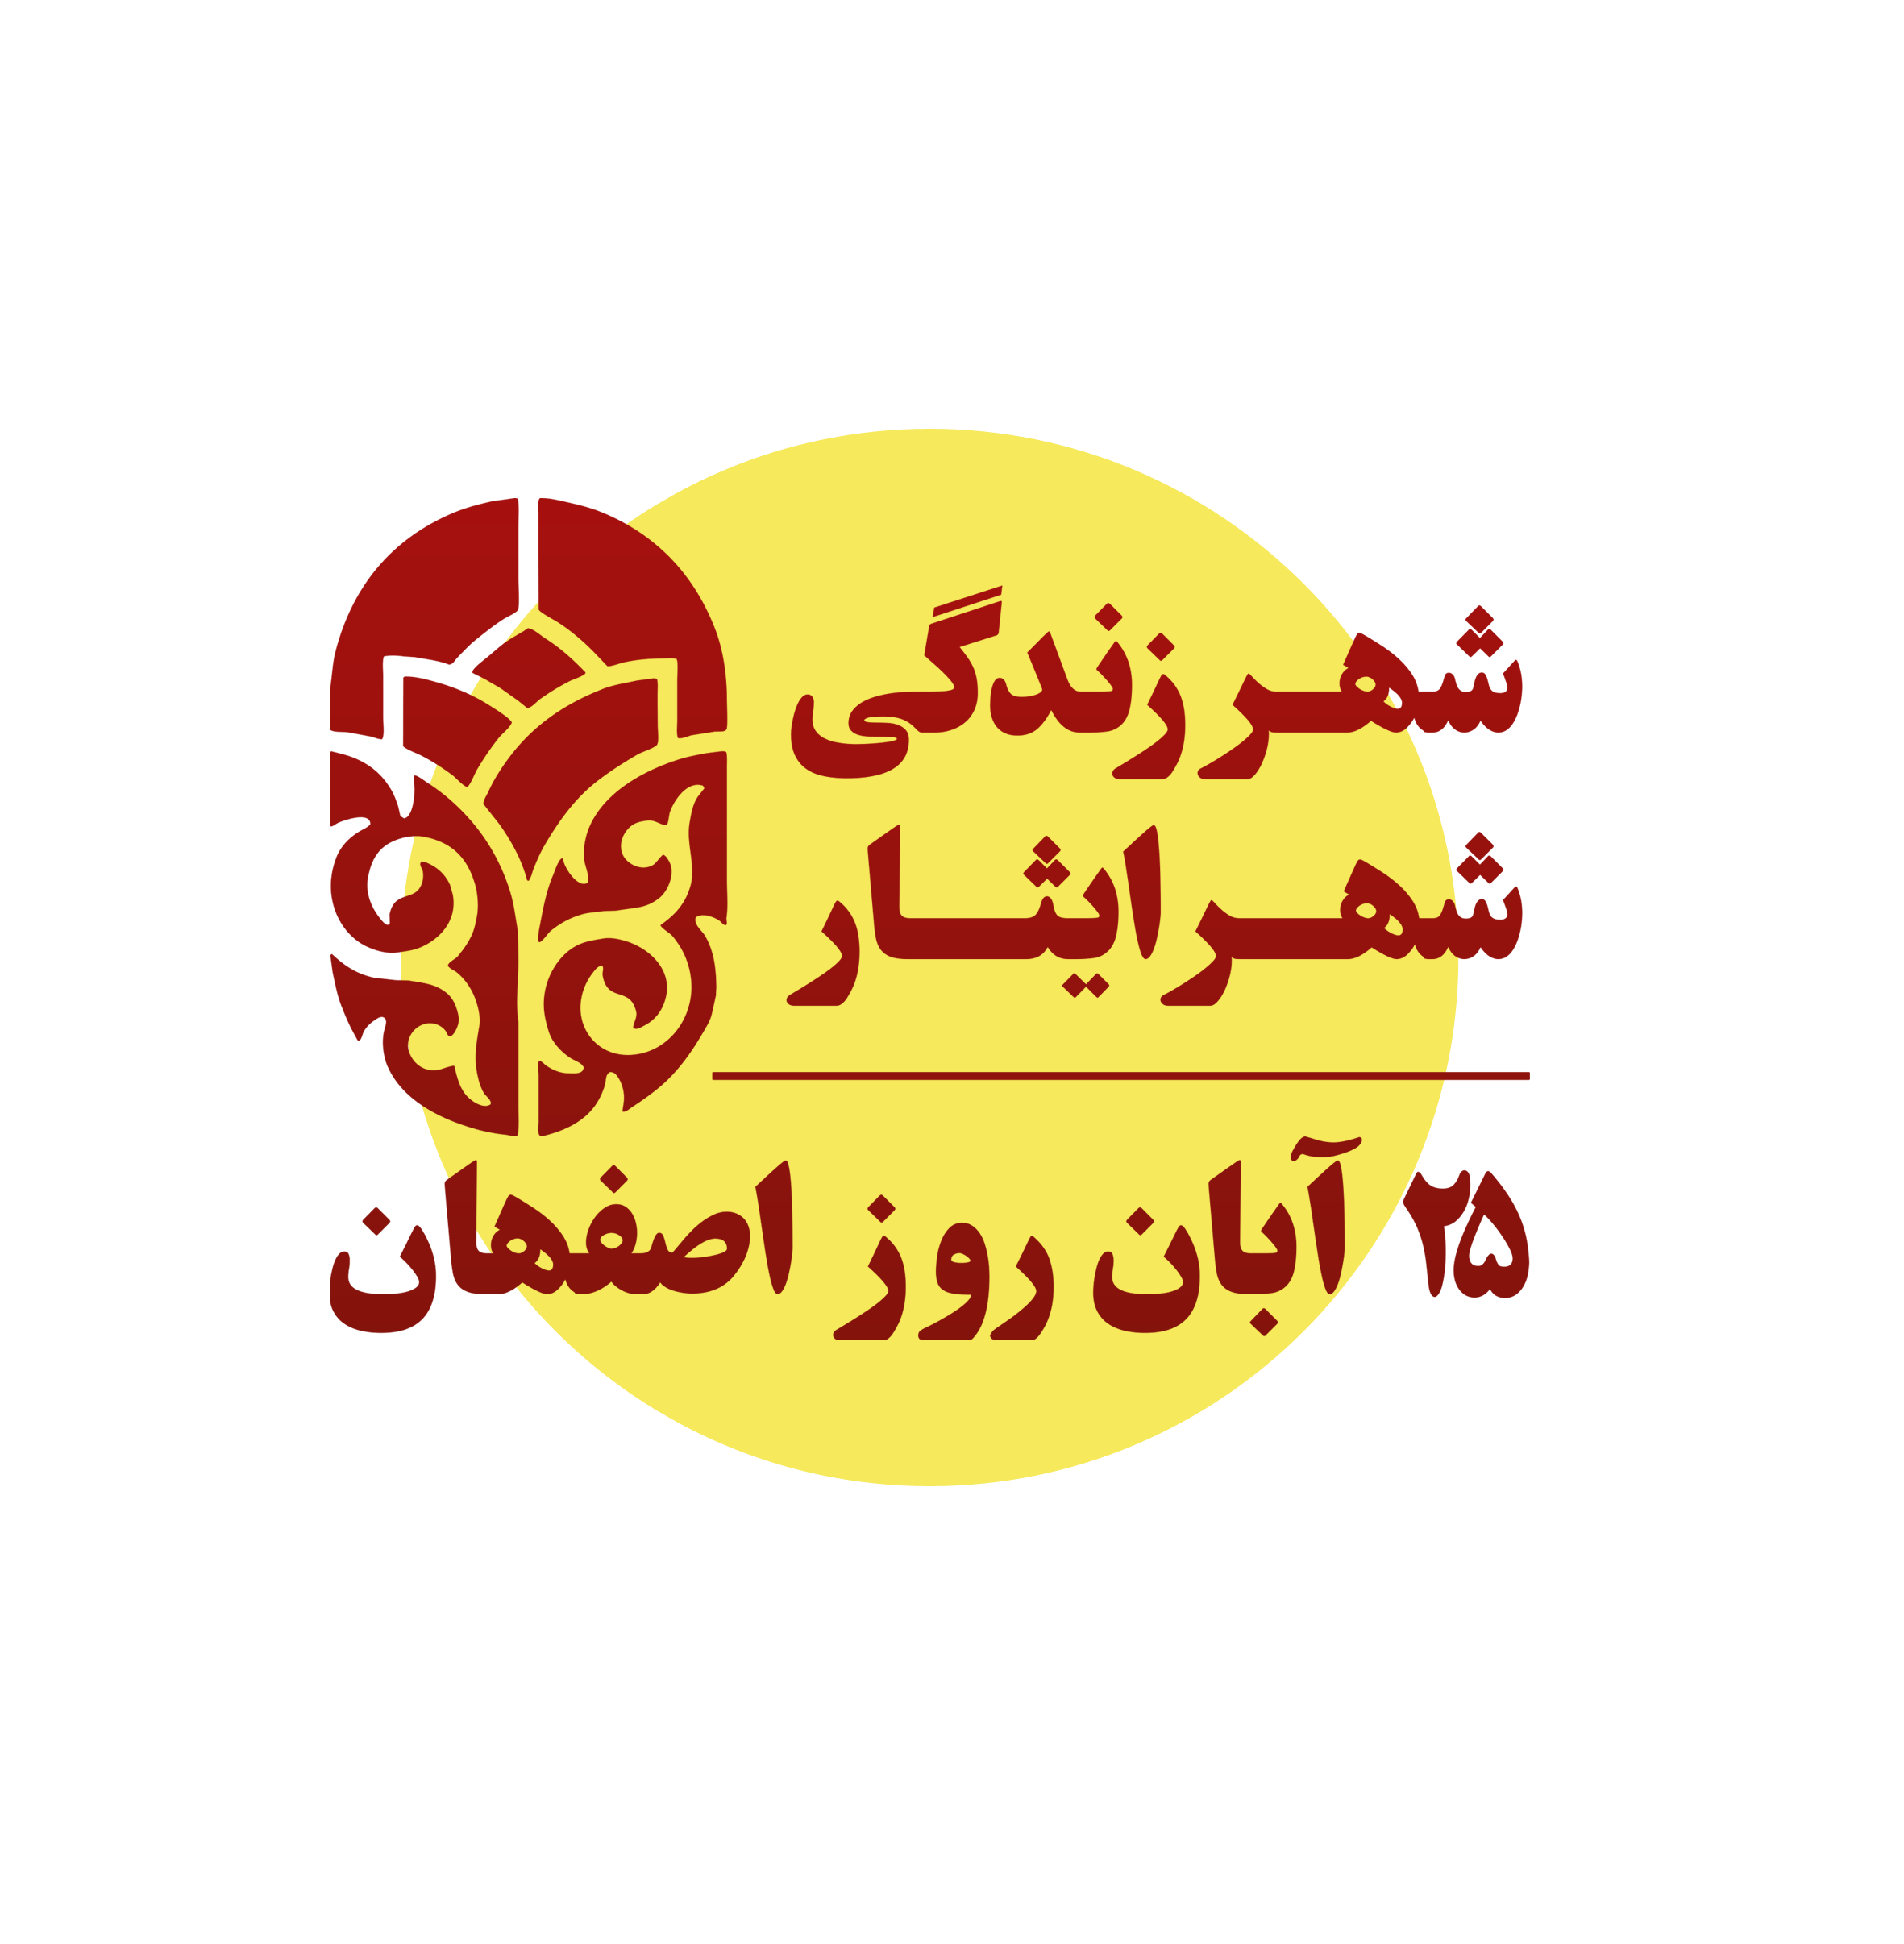 مناطق 15 گانه شهرداری اصفهان